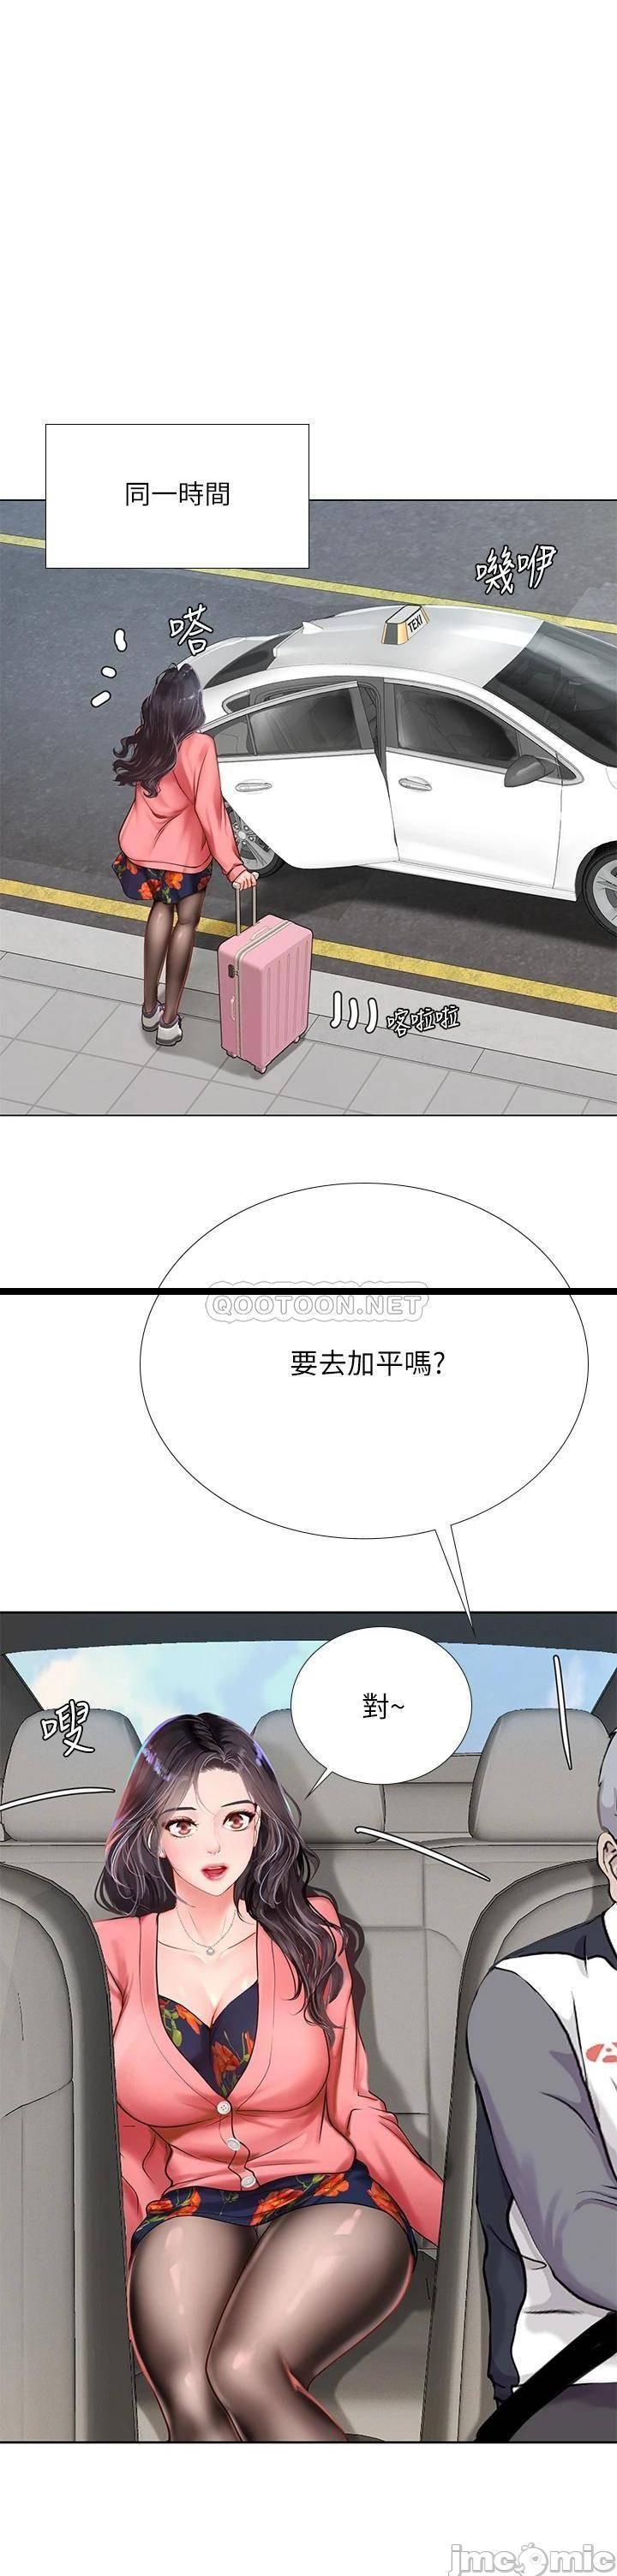 《享乐补习街》漫画 第93话 智妍魅力无边的屁股